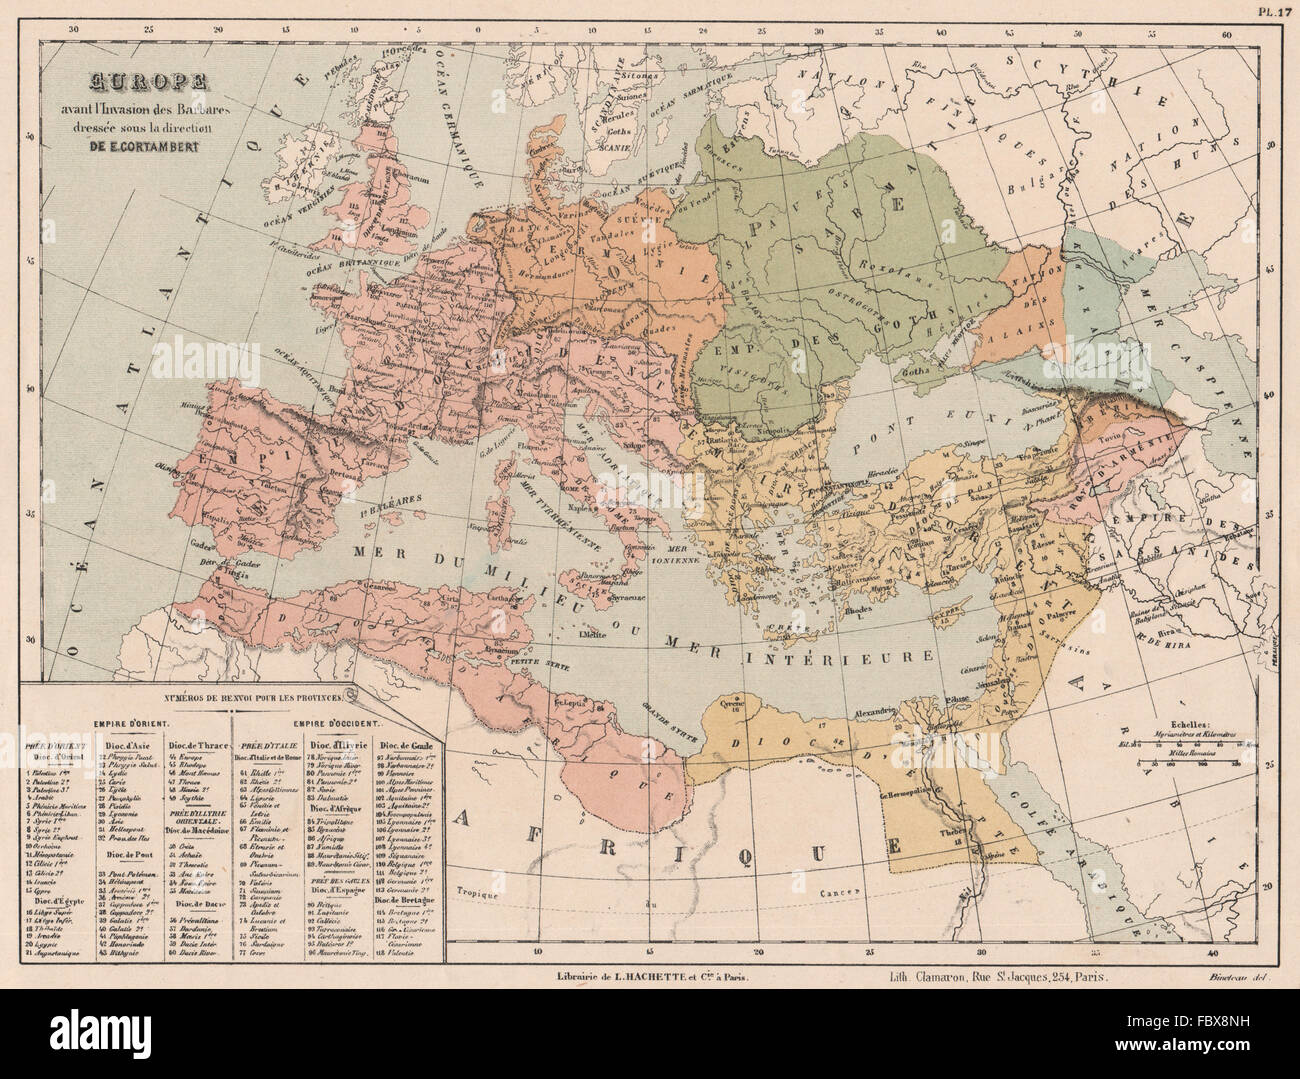 EUROPA VOR DER INVASION DER BARBAREN. Eastern & Western Roman reiche, 1880-Karte Stockfoto